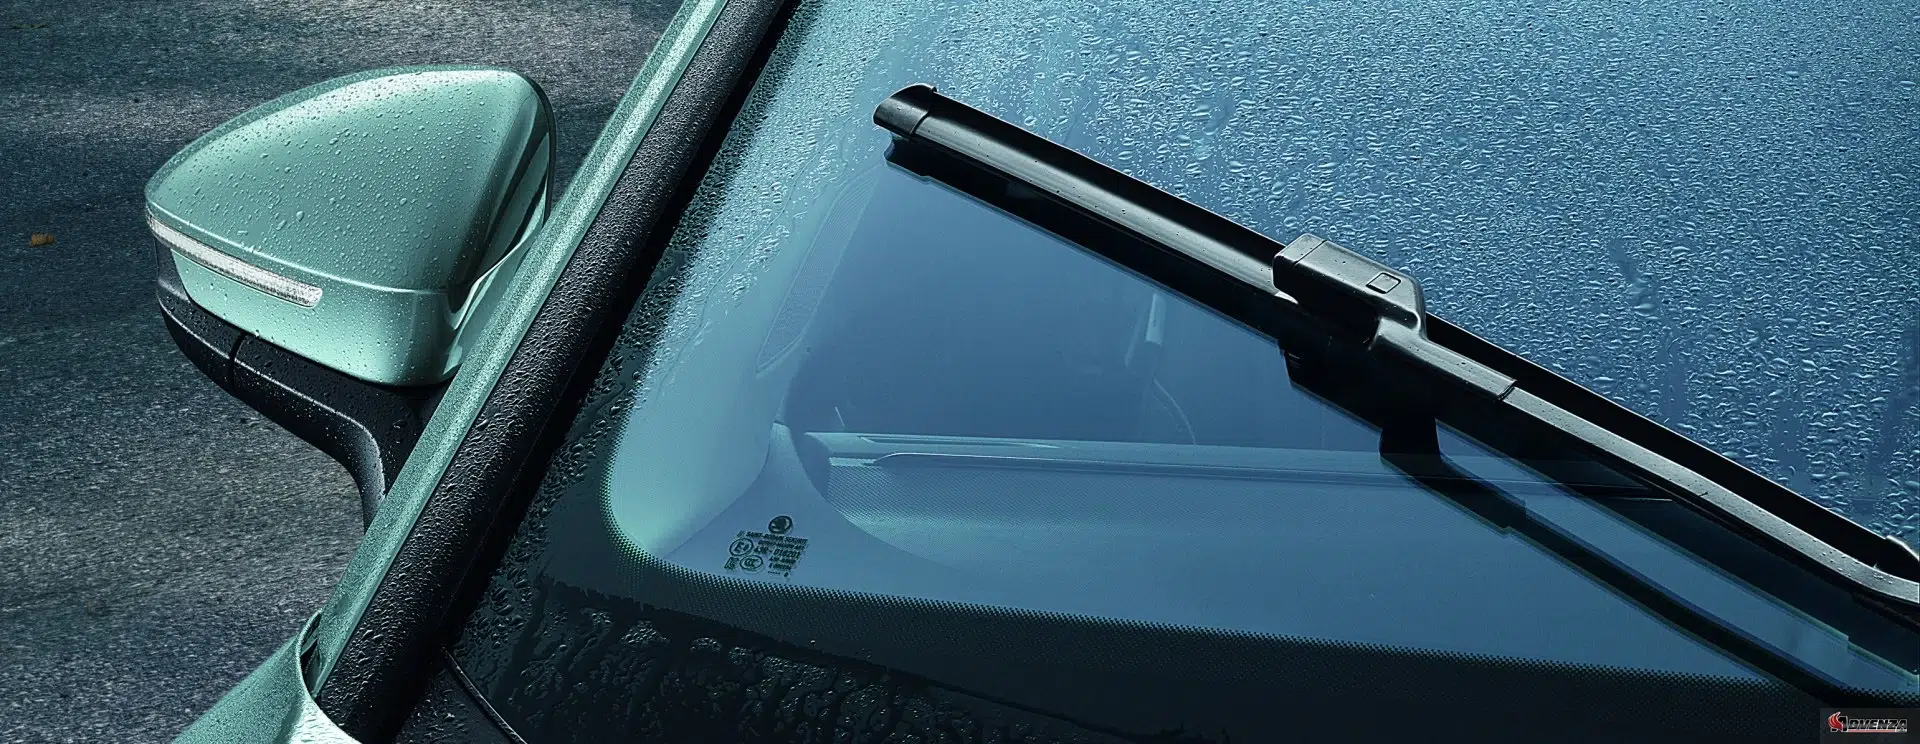 Trước khi thay, hãy nắm vững kiến thức về hệ thống gạt mưa trên xe ô tô của bạn